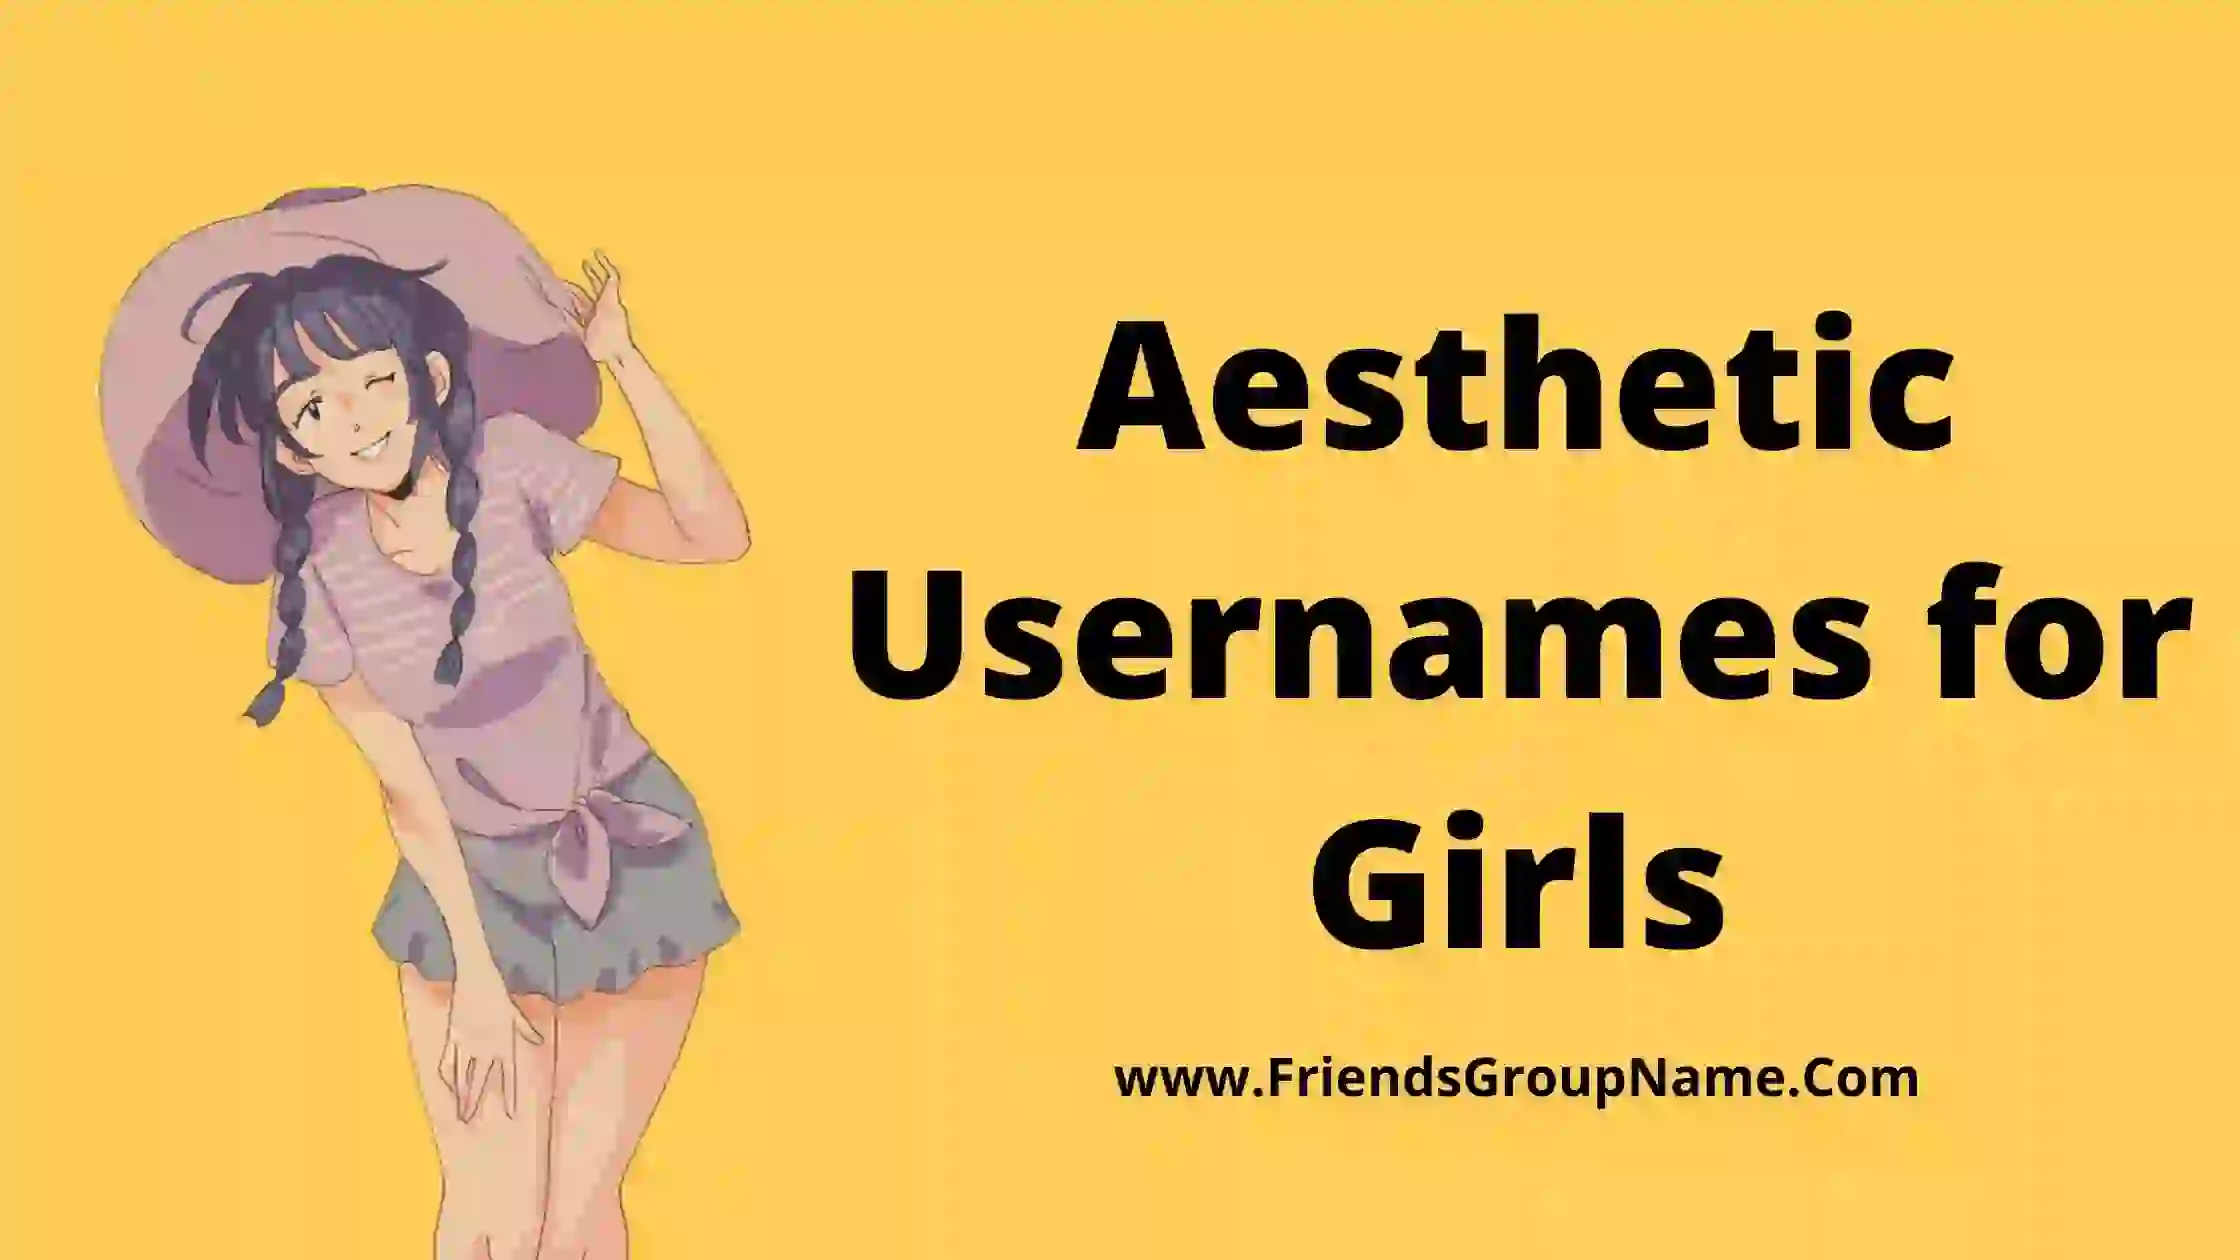 Aesthetic Usernames for Girls